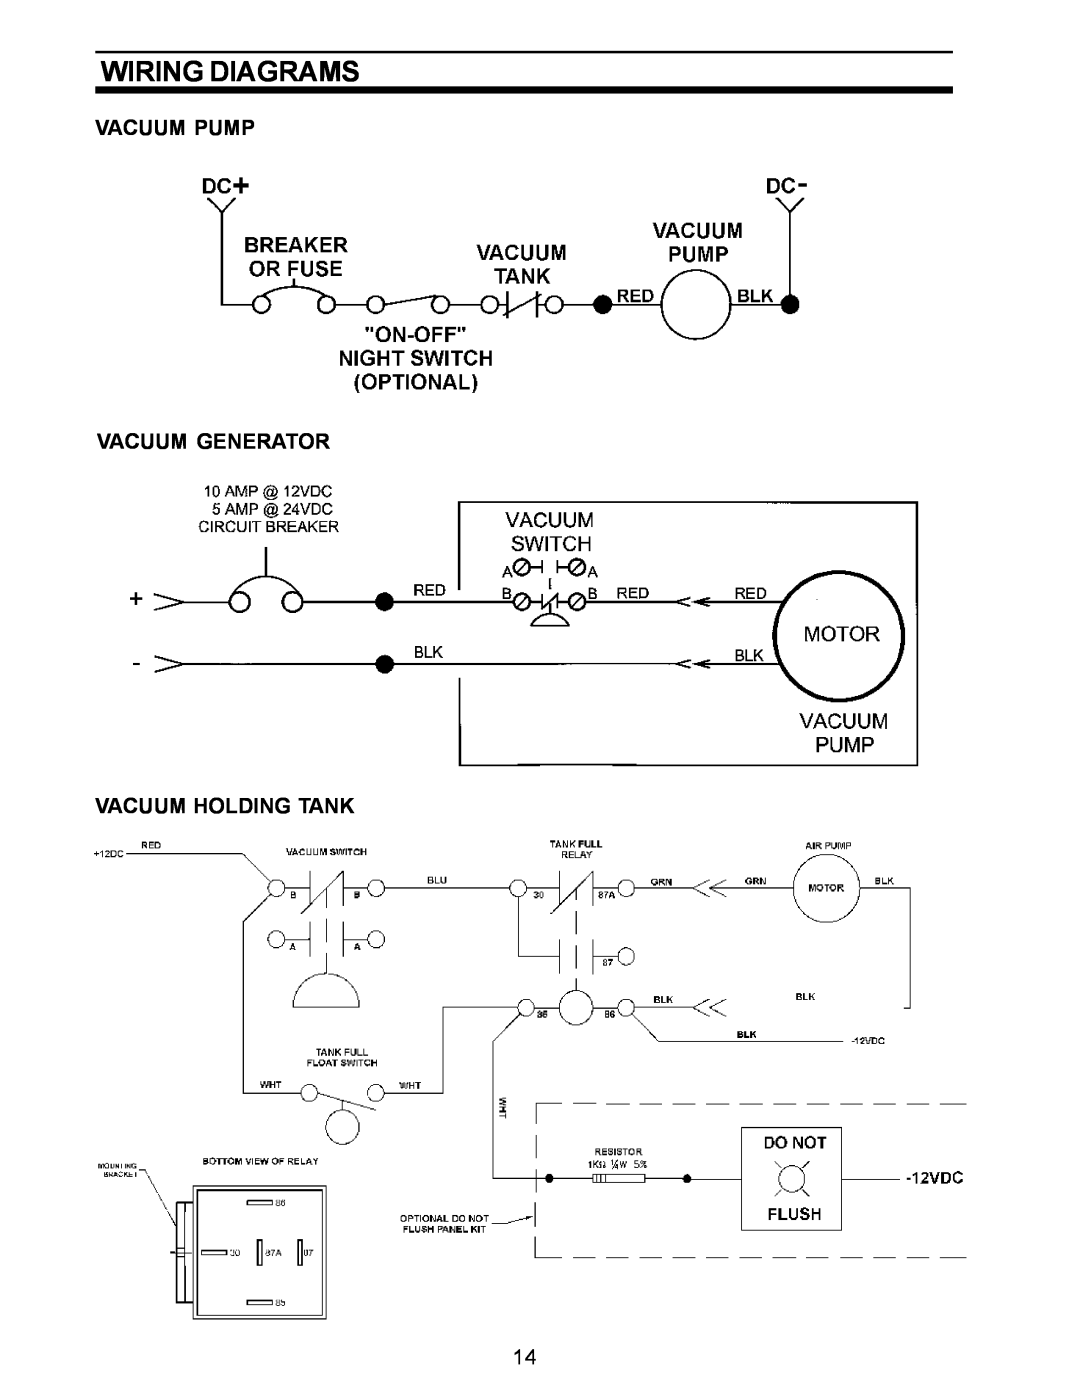 Dometic SANITATION SYSTEM owner manual Wiring Diagrams, Vacuum Pump Vacuum Generator Vacuum Holding Tank 